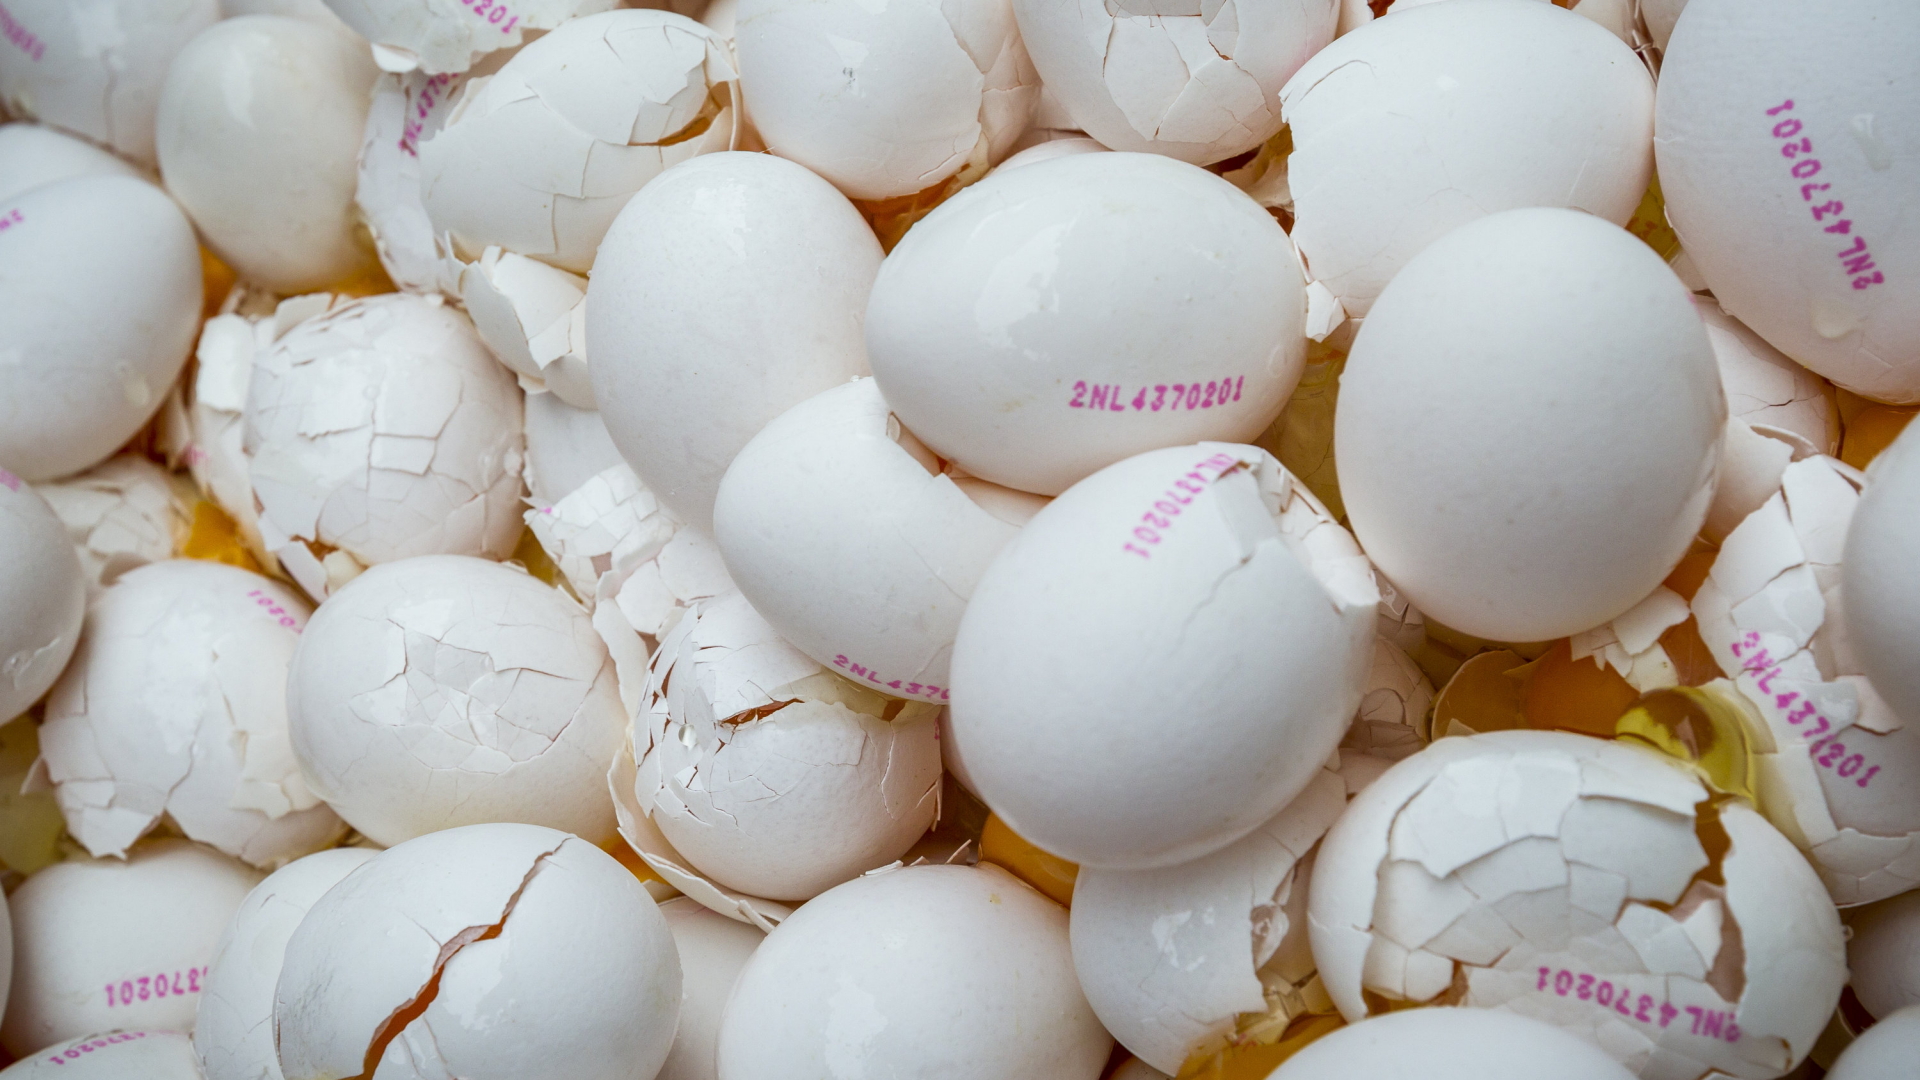 Im Auftrag der niederländischen Umweltbehörde zerstörte Eier, die mit dem Insektizid Fipronil verseucht waren.